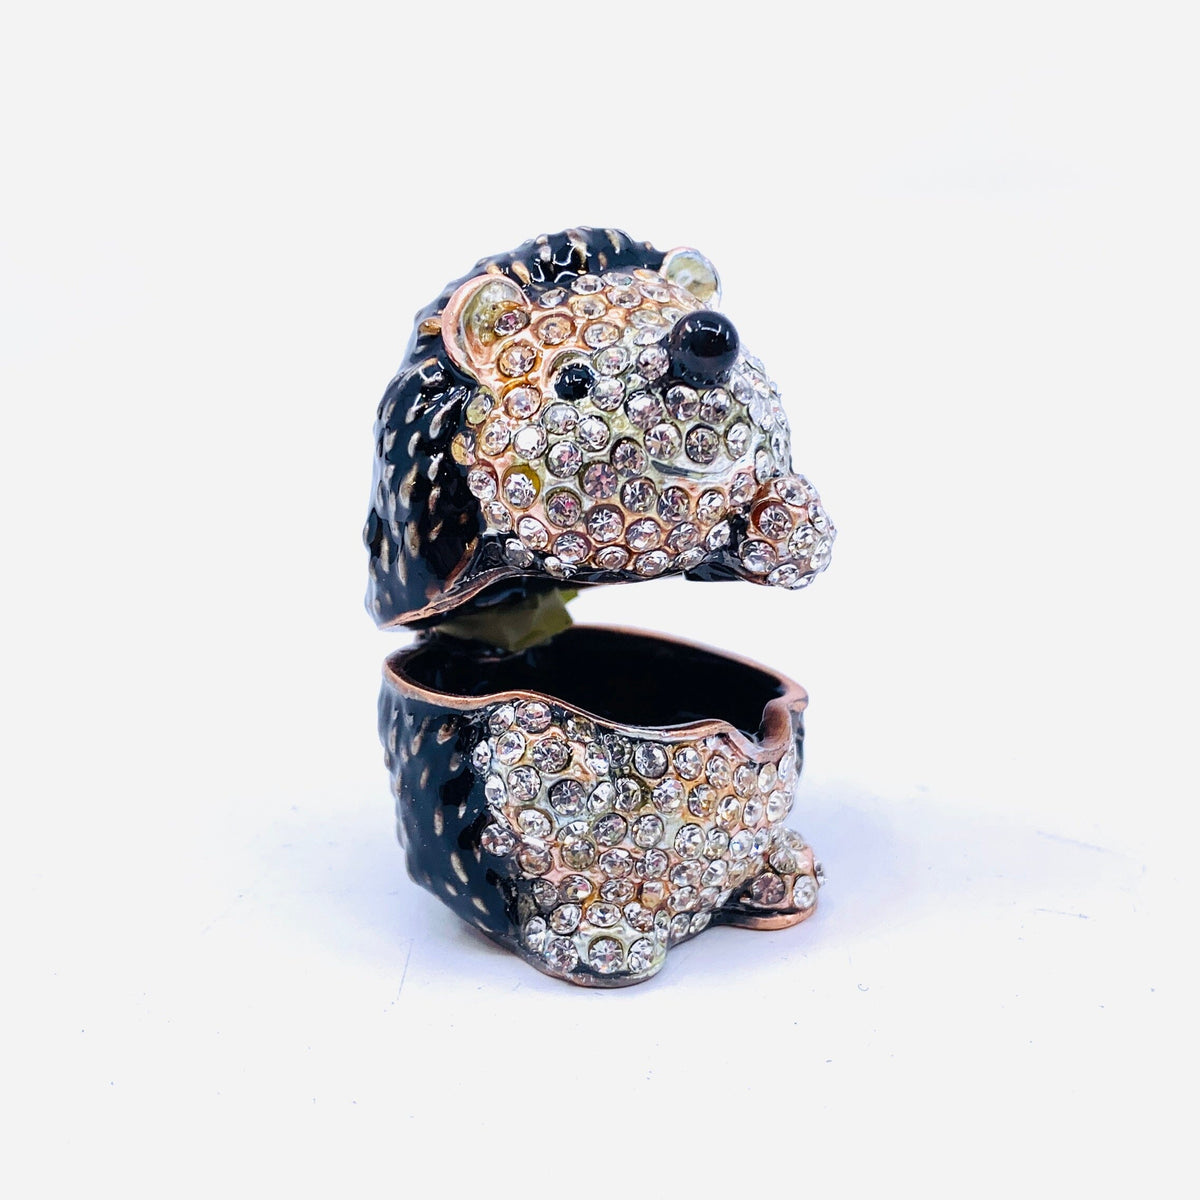 Bejeweled Enamel Trinket Box 17, Hedgehog